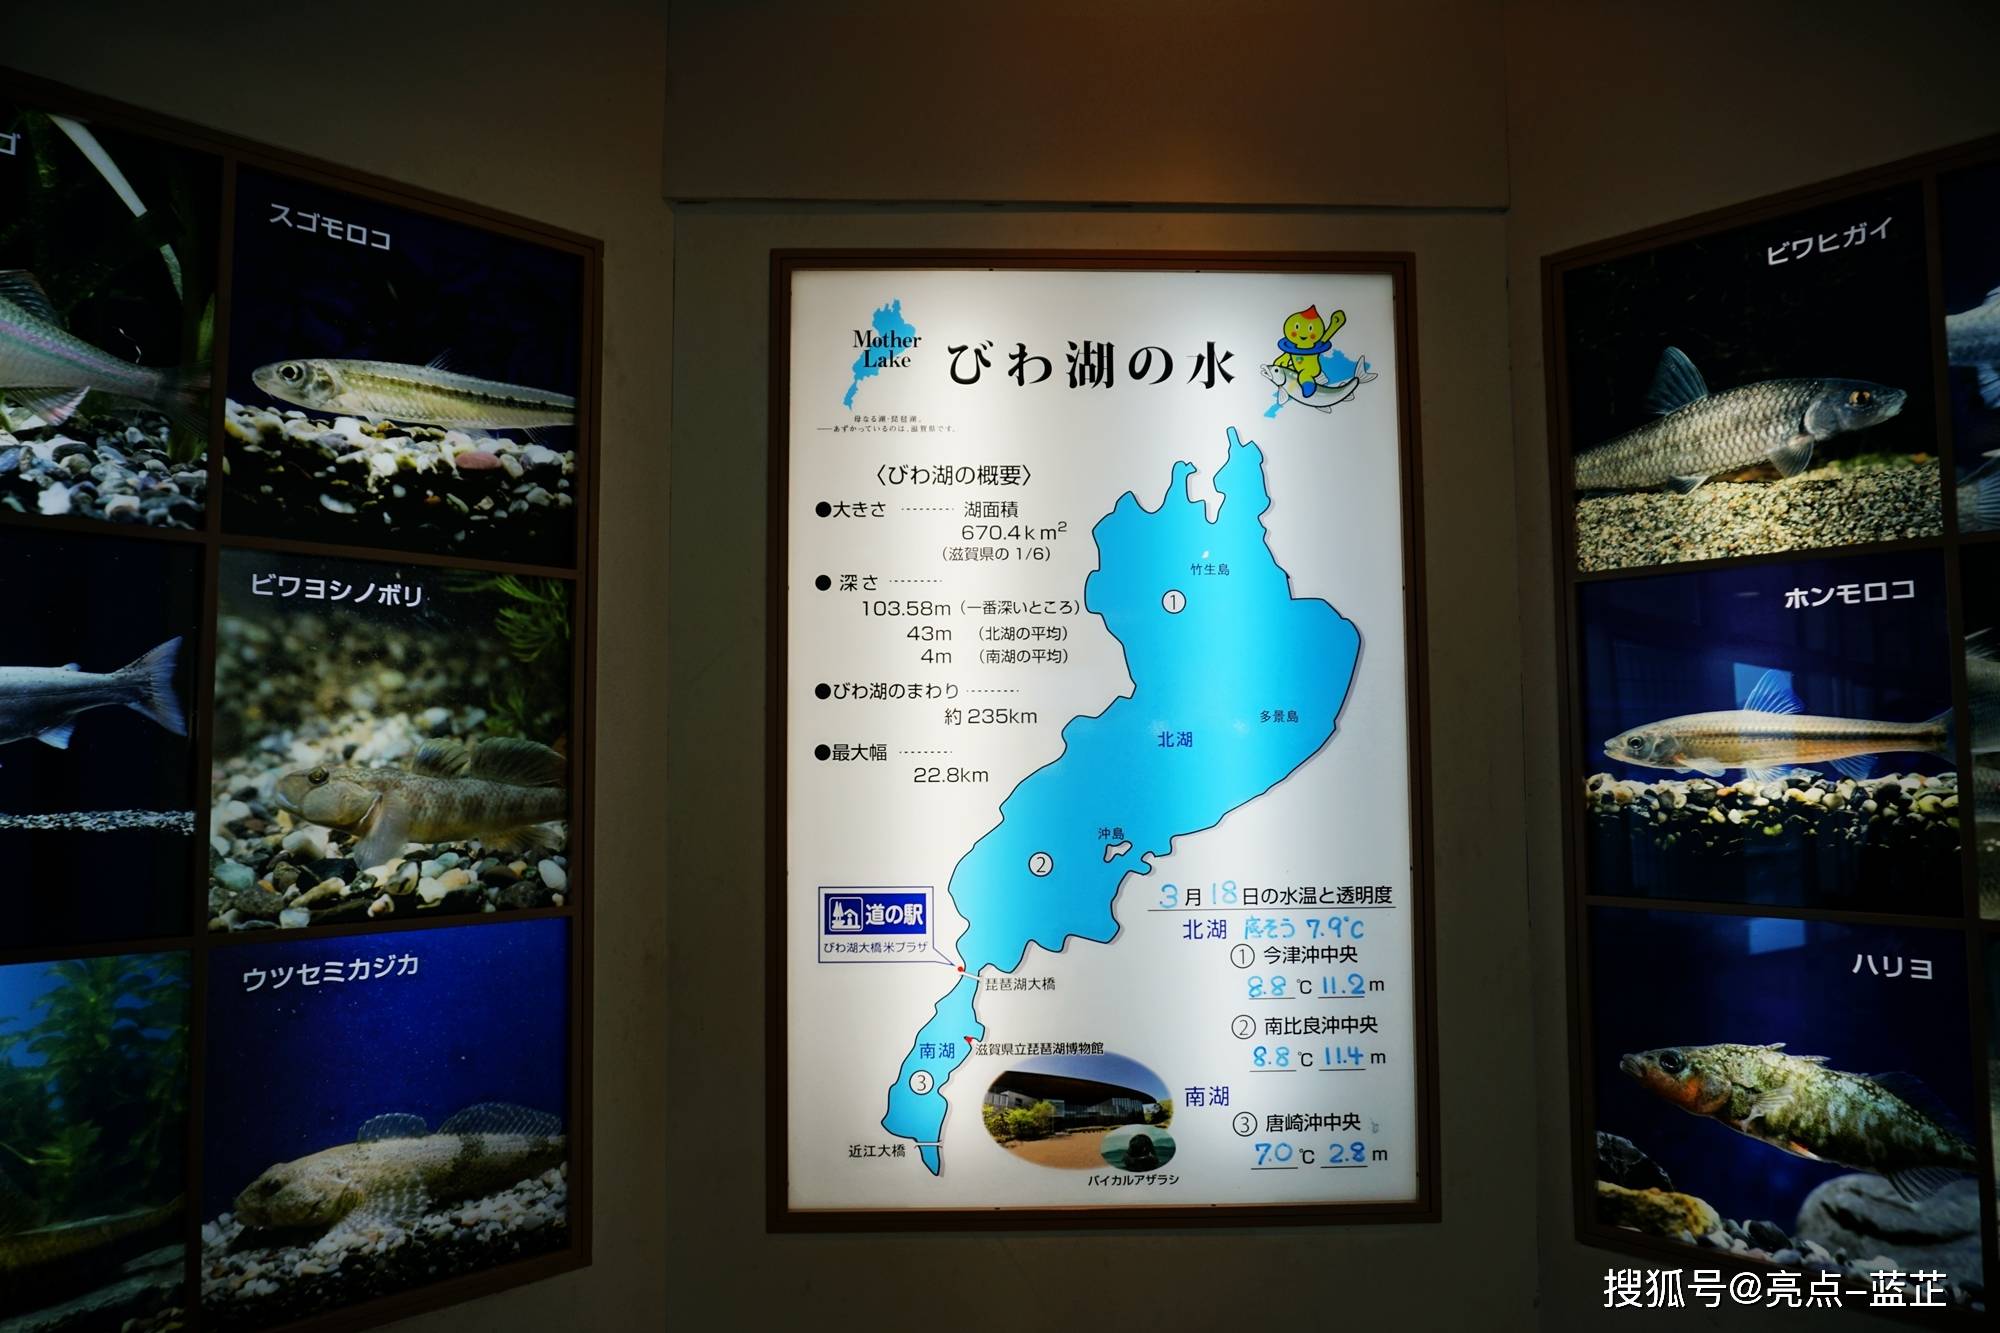 琵琶湖,世界第三,日本第一大湖,与富士山一起被日本人视为日本的象征